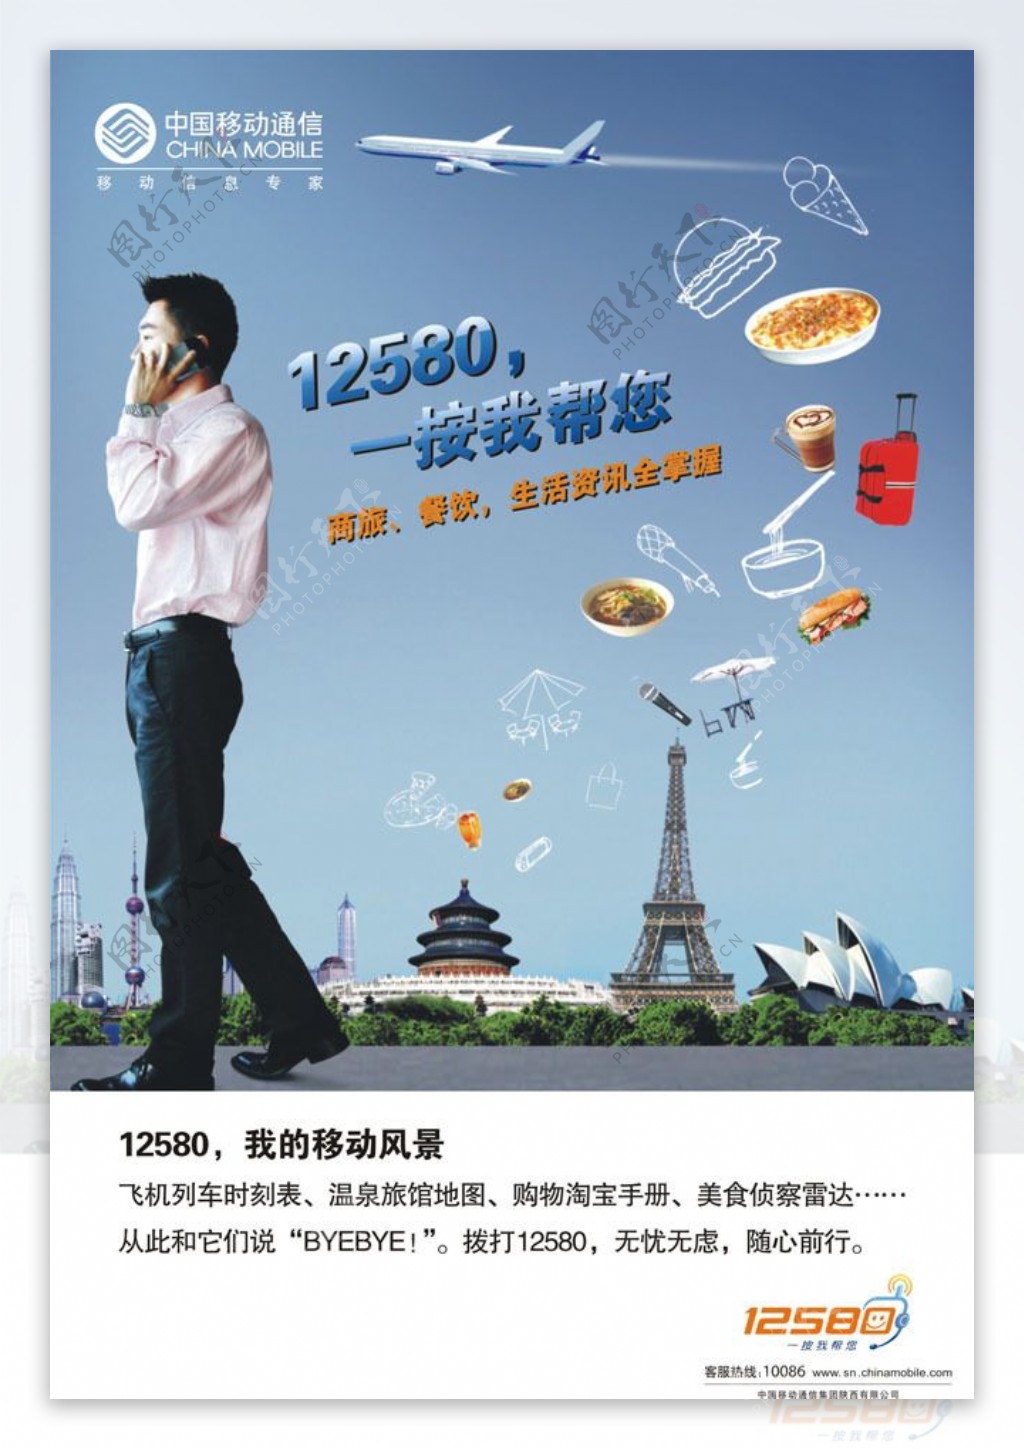 中国移动12580广告矢量素材